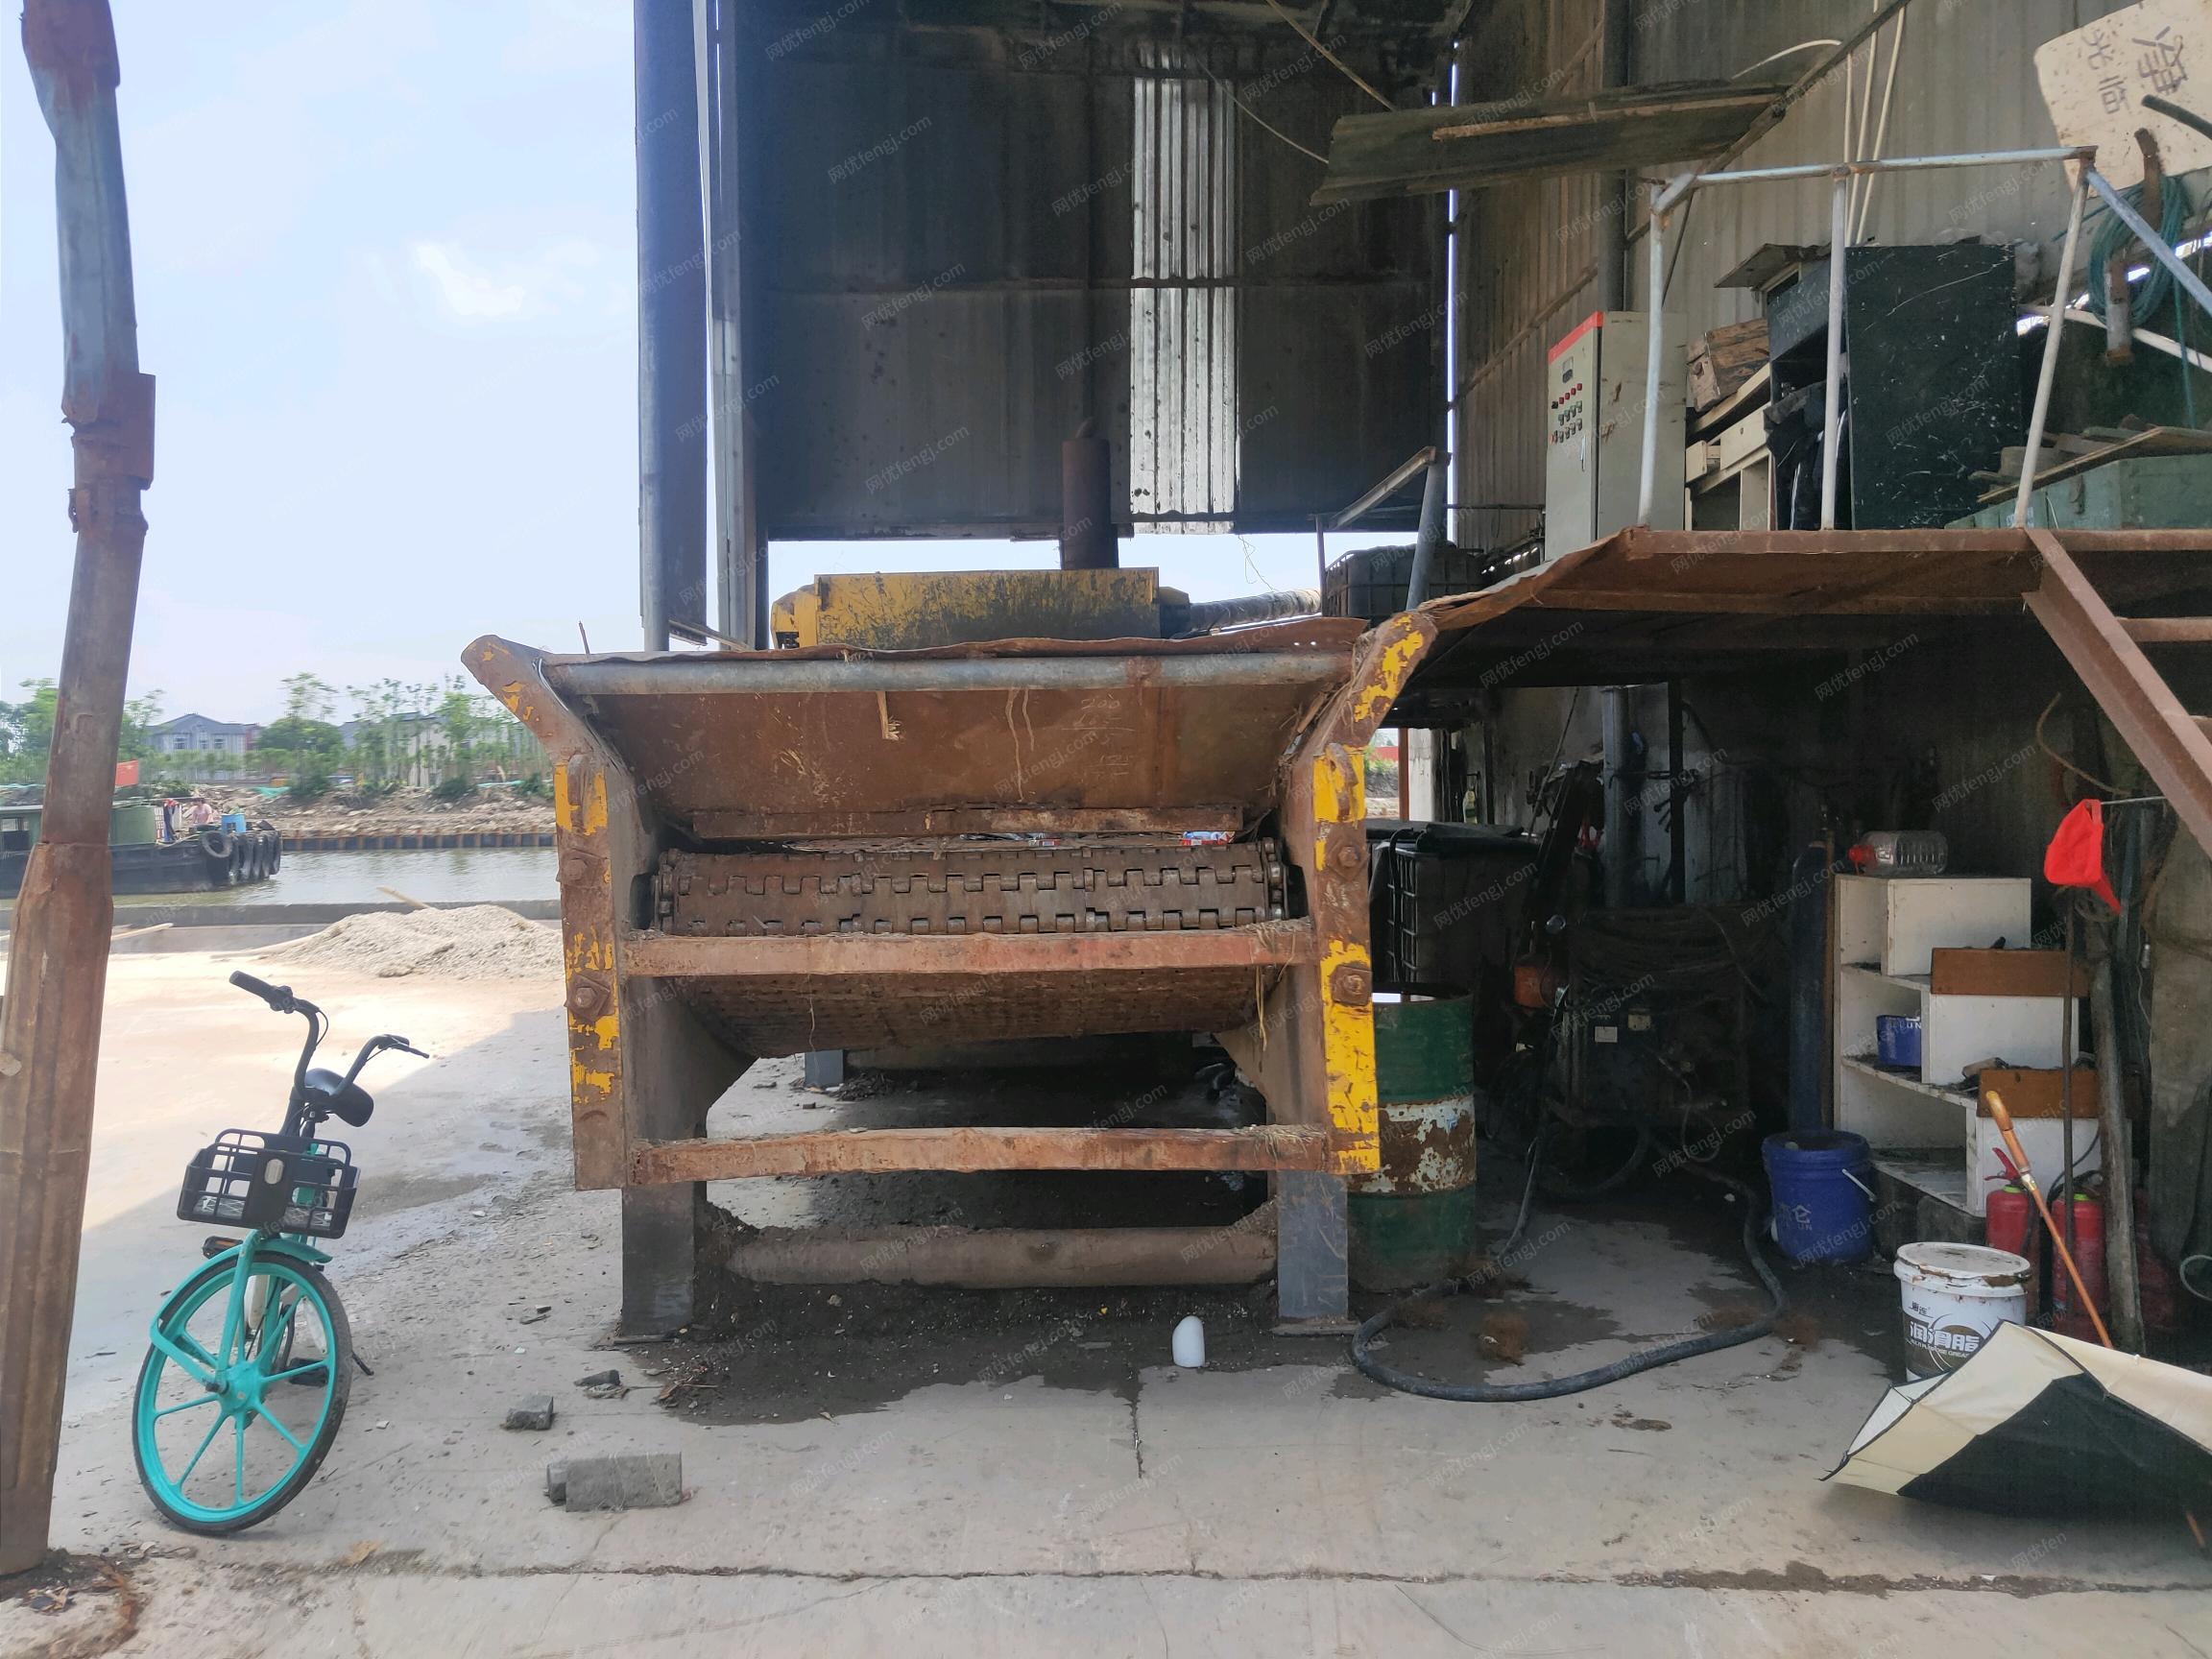 上海青浦区不做了出售2台1600-600木柴粉碎机以及配件   用了二年,能正常使用,看货议价.可分开卖.